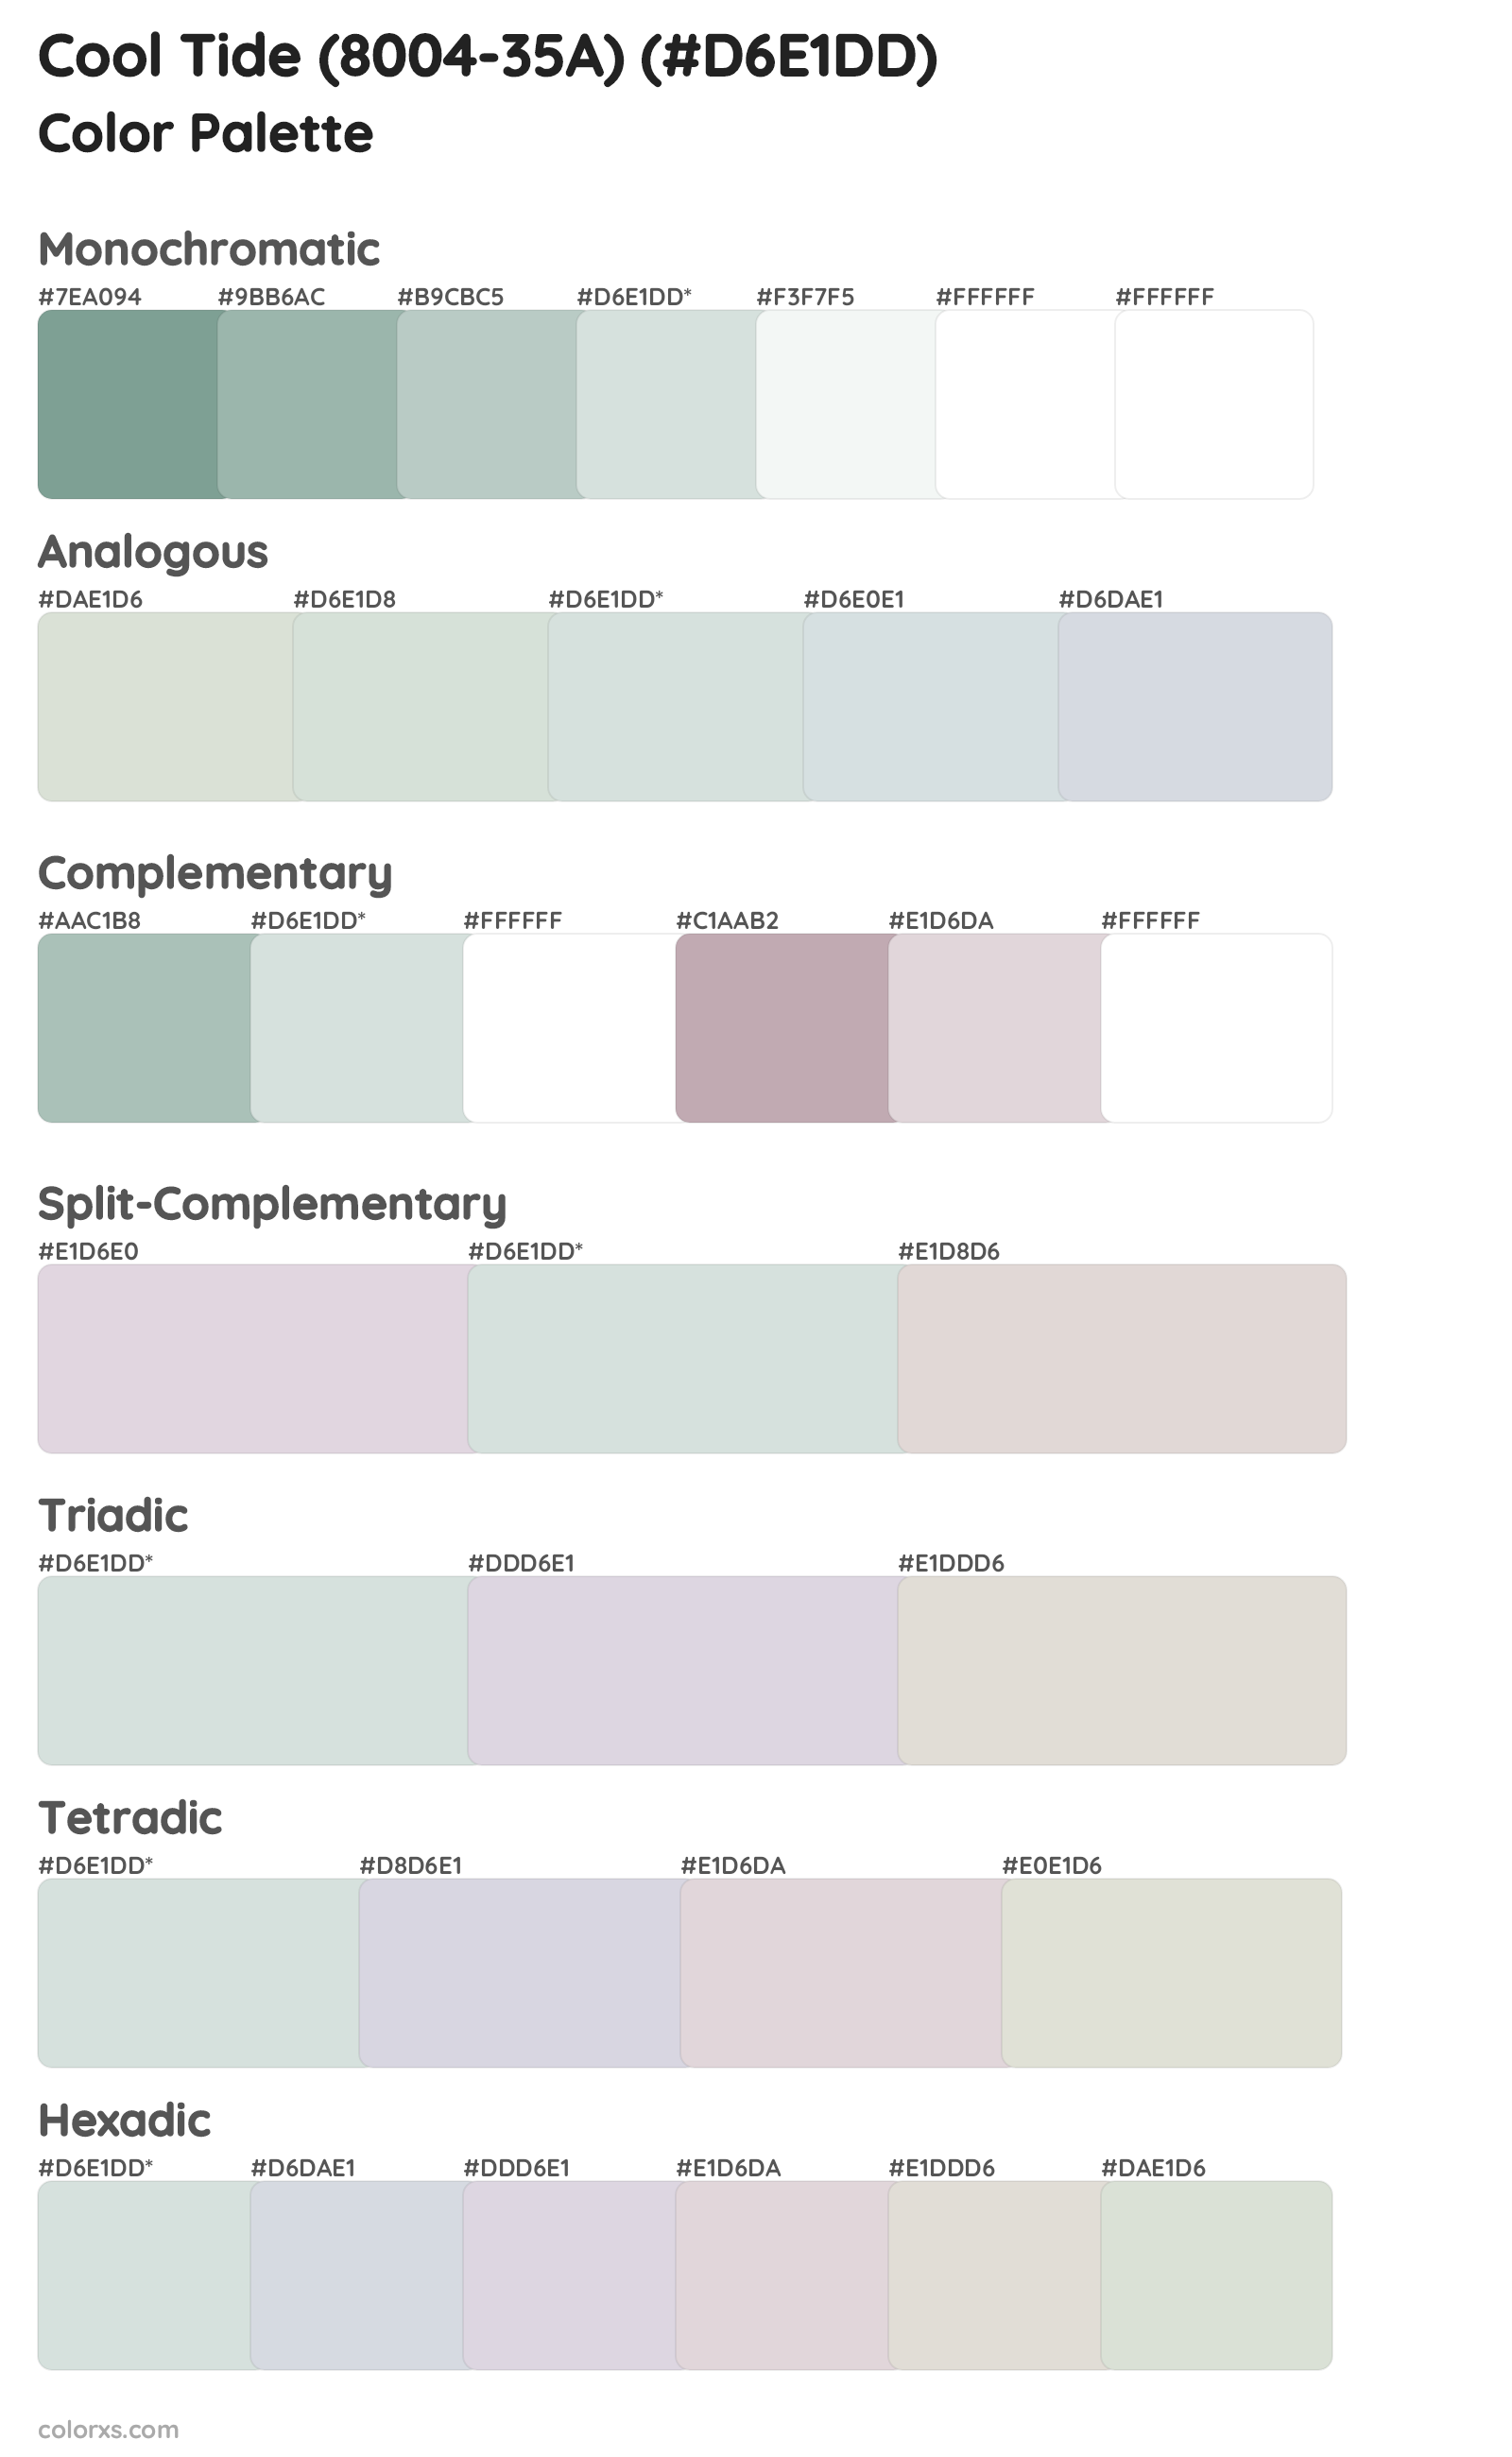 Cool Tide (8004-35A) Color Scheme Palettes